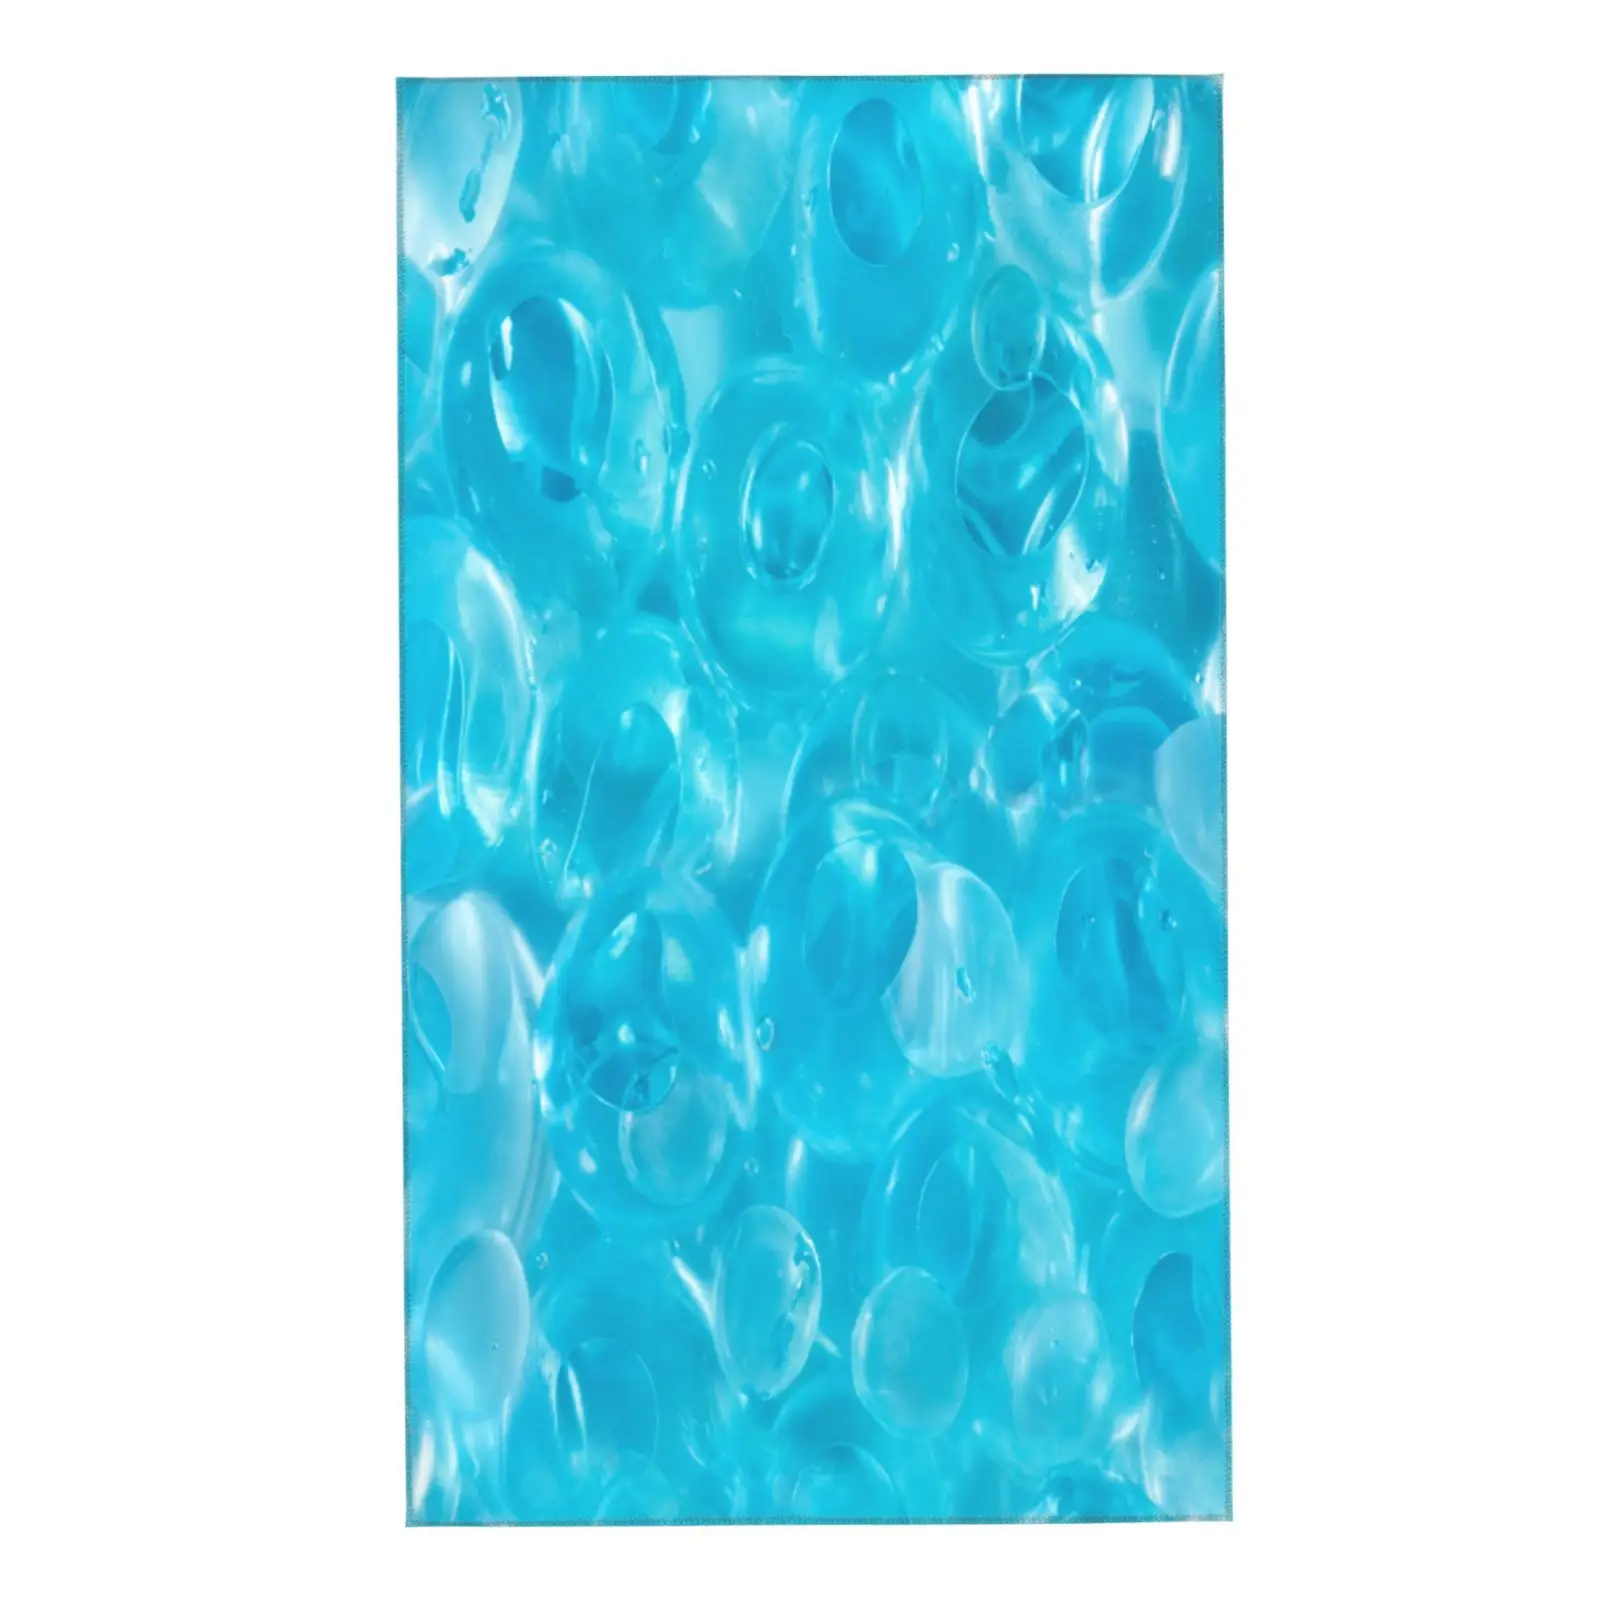 

Красивое бирюзовое голубое полотенце для лица с пузырьками, уникальное мягкое банное полотенце для отелей, спортивное полотенце для рук